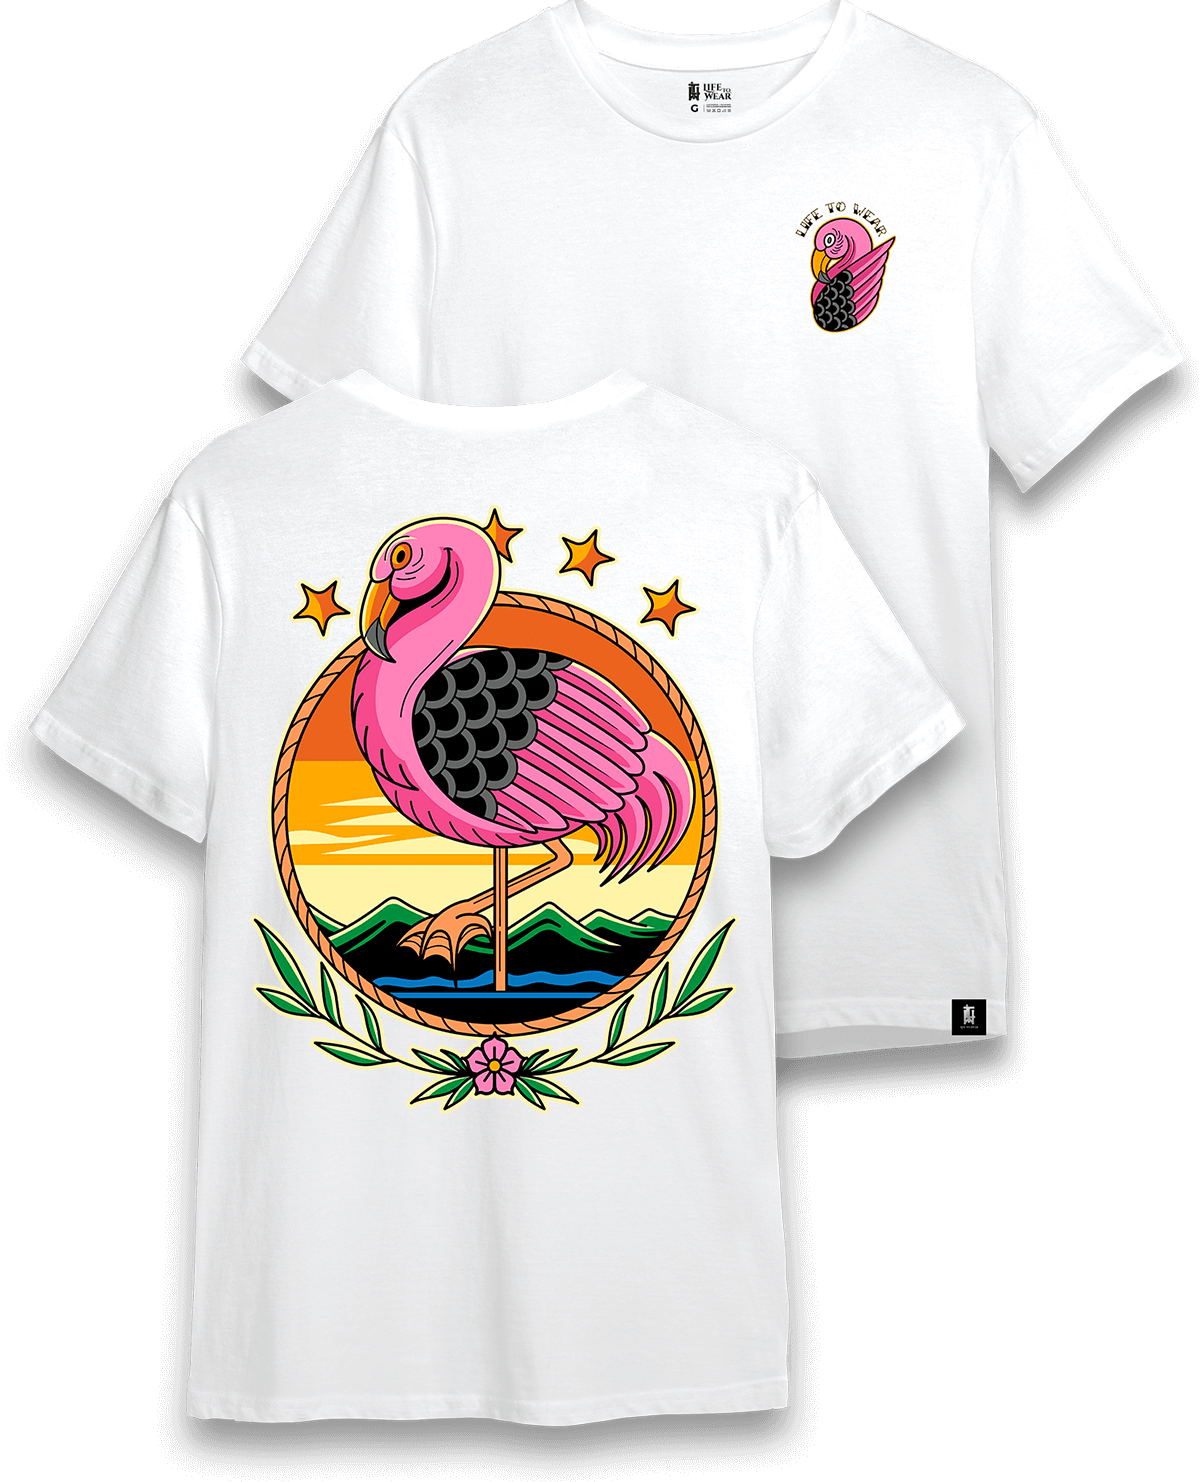 Camiseta Ltw Flamingo White